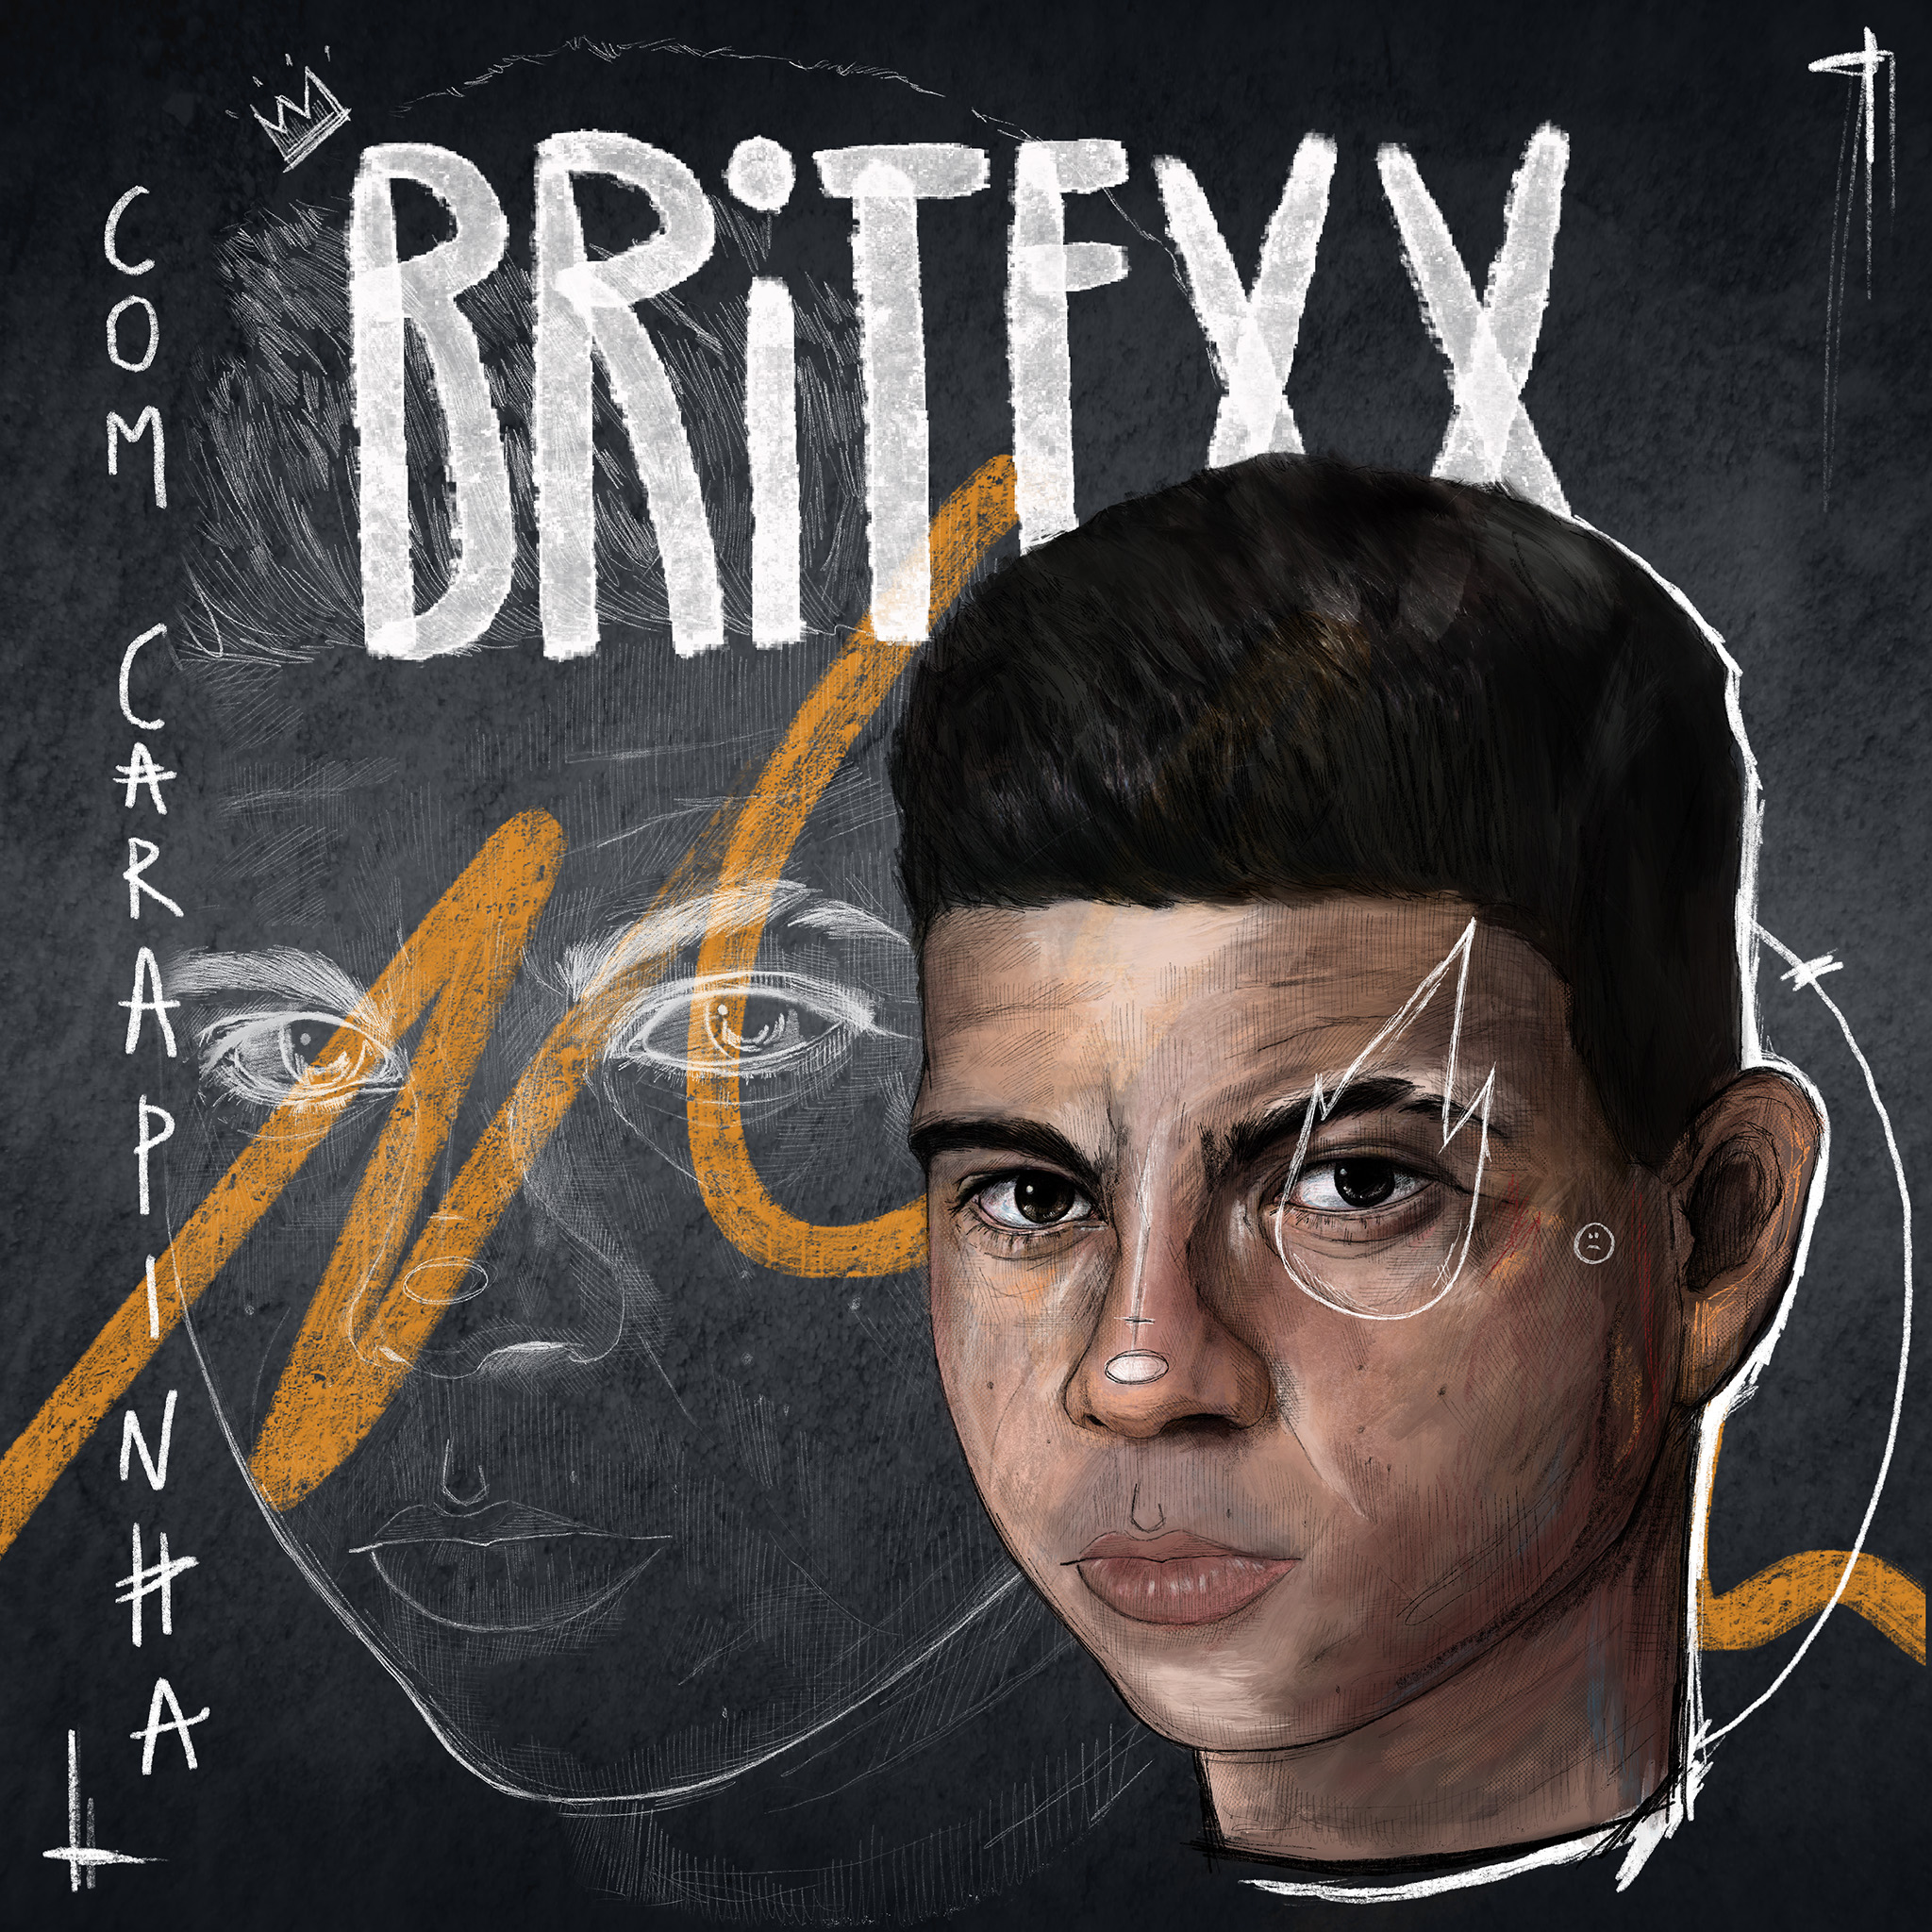 Britexx - Com Carapinha